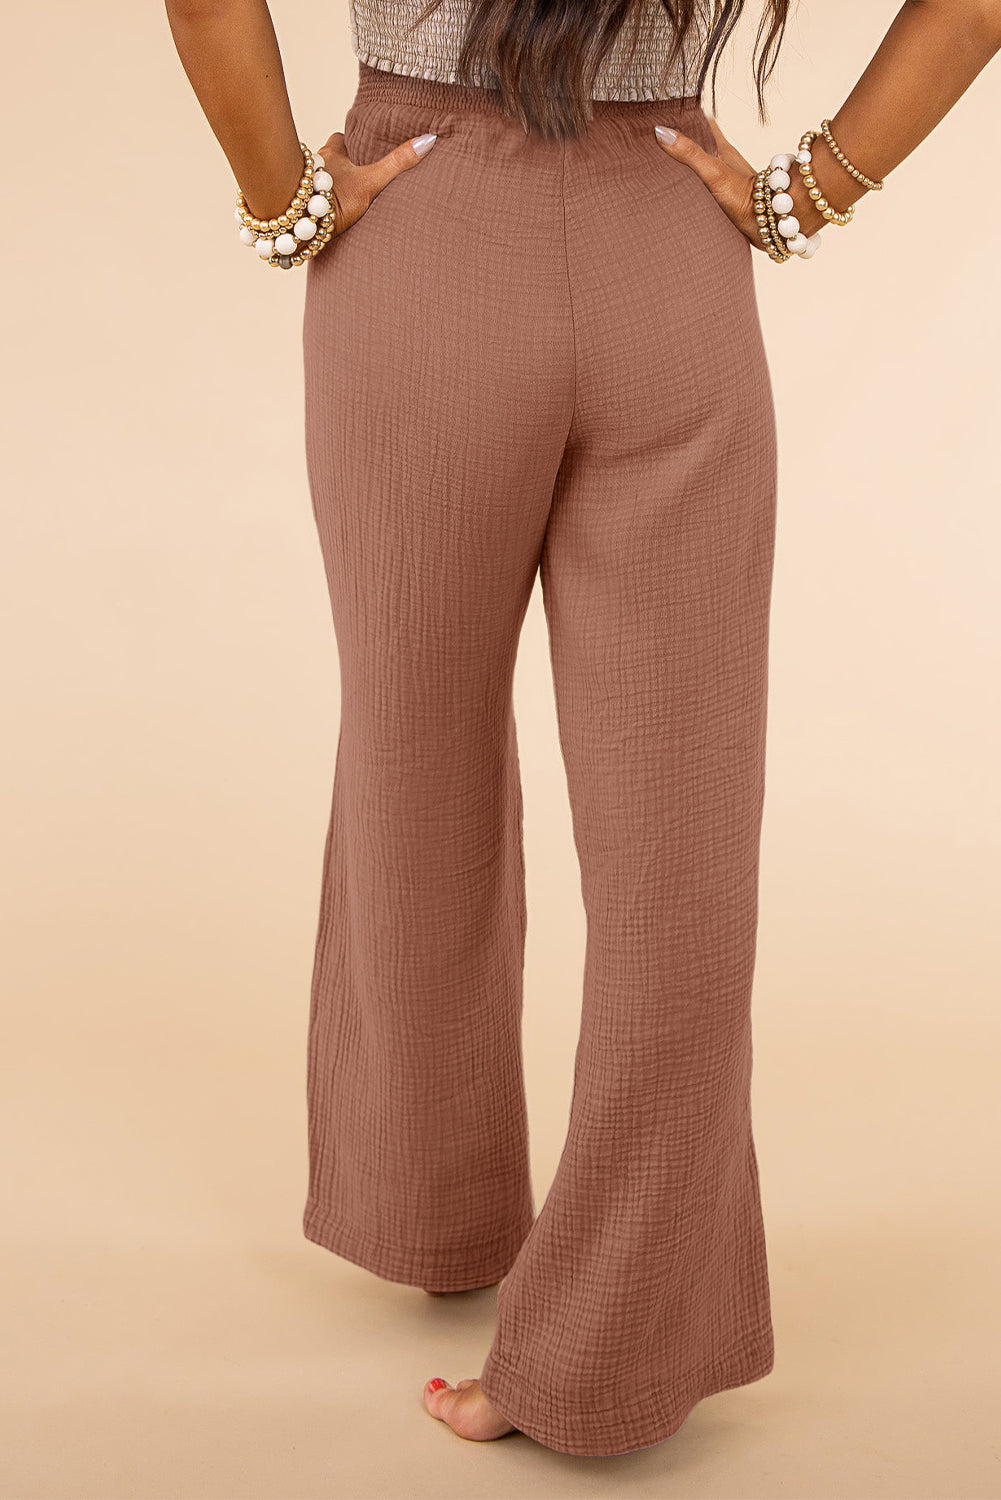 PL771089-10-1X, PL771089-10-2X, PL771089-10-3X, Pink Textured High Waist Wide Leg Plus Size Pants